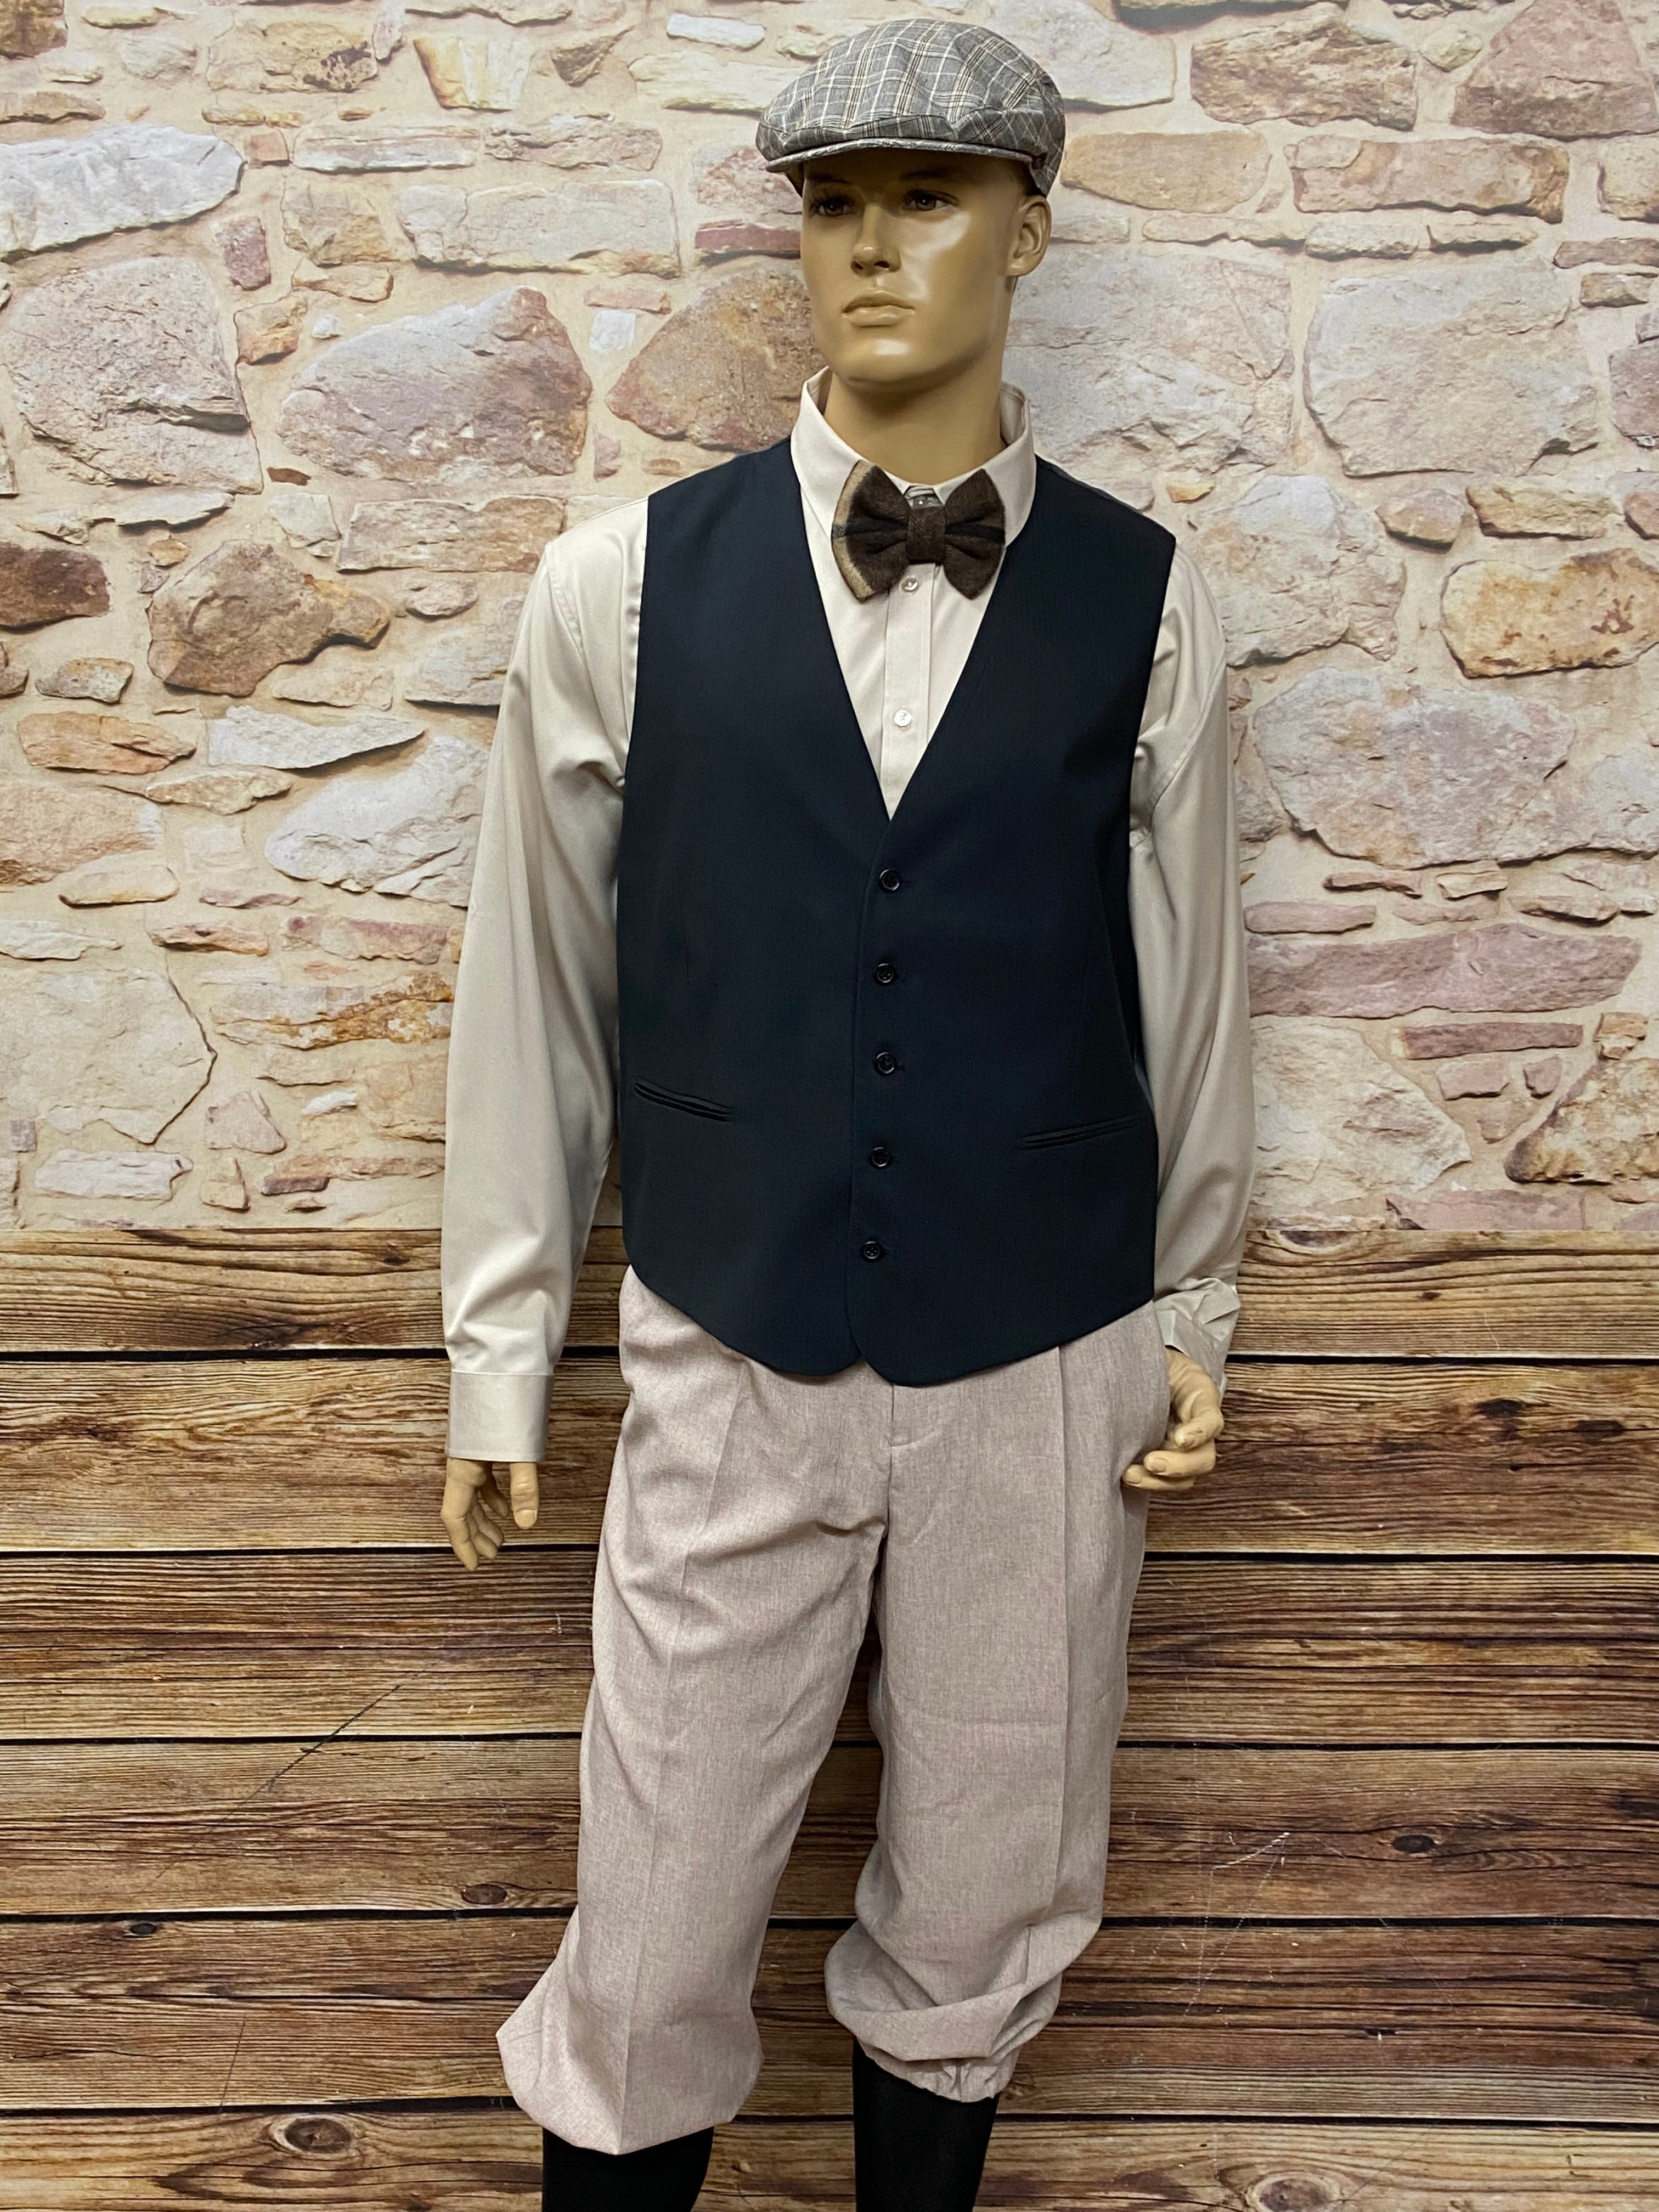 20er Jahre Mode Männer Outfit Gr.58